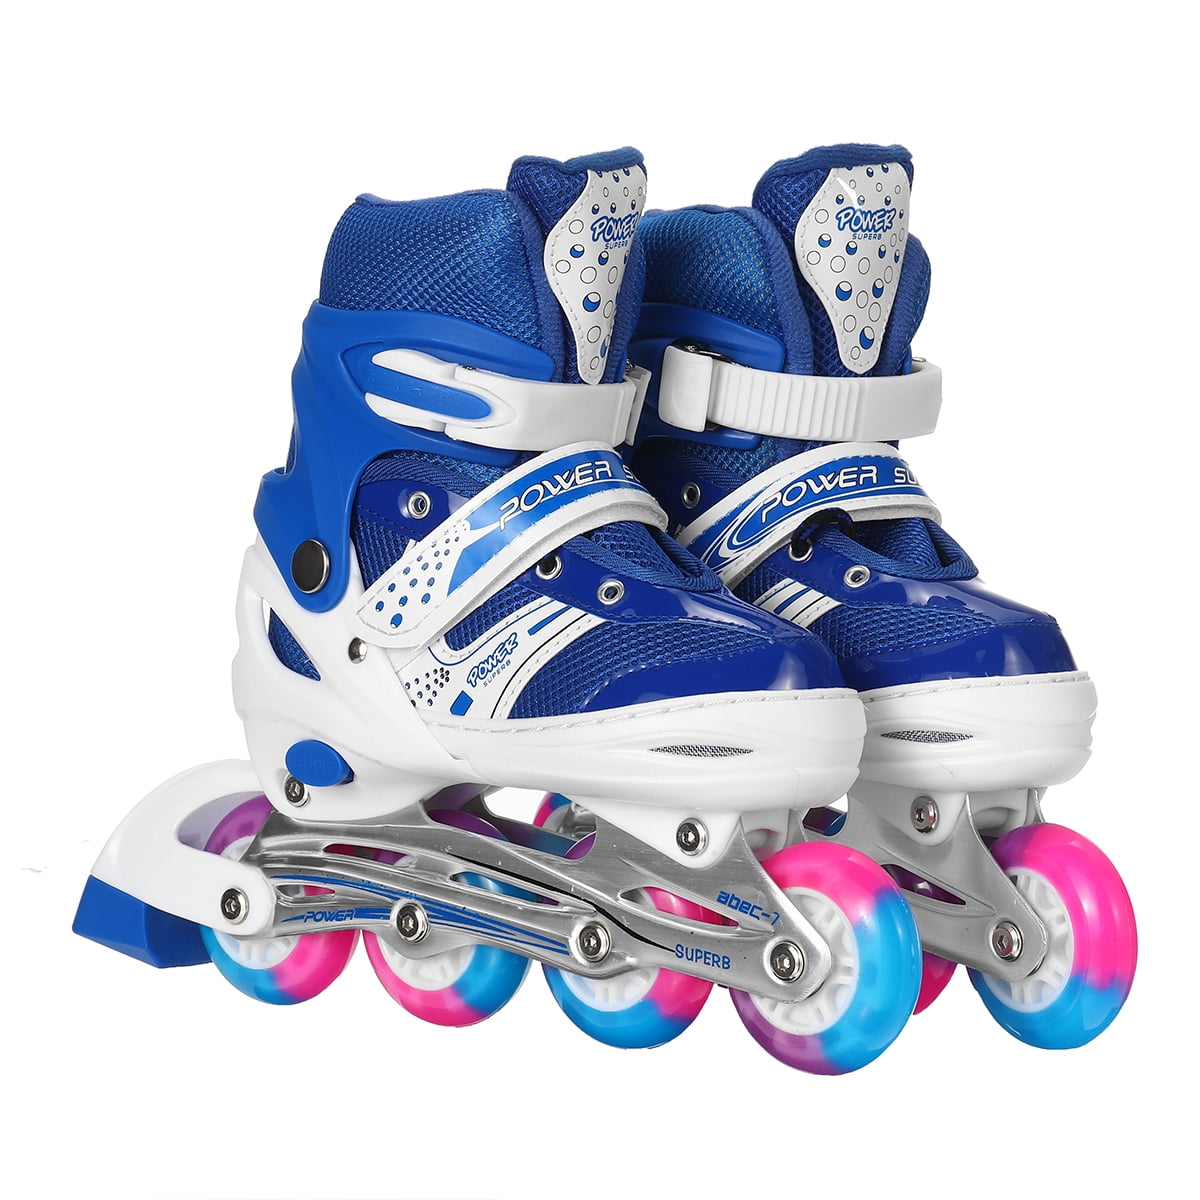 Kids Children Rollers Tracer Adjustable 4 Wheel Roller Skates Flash Wheel dit